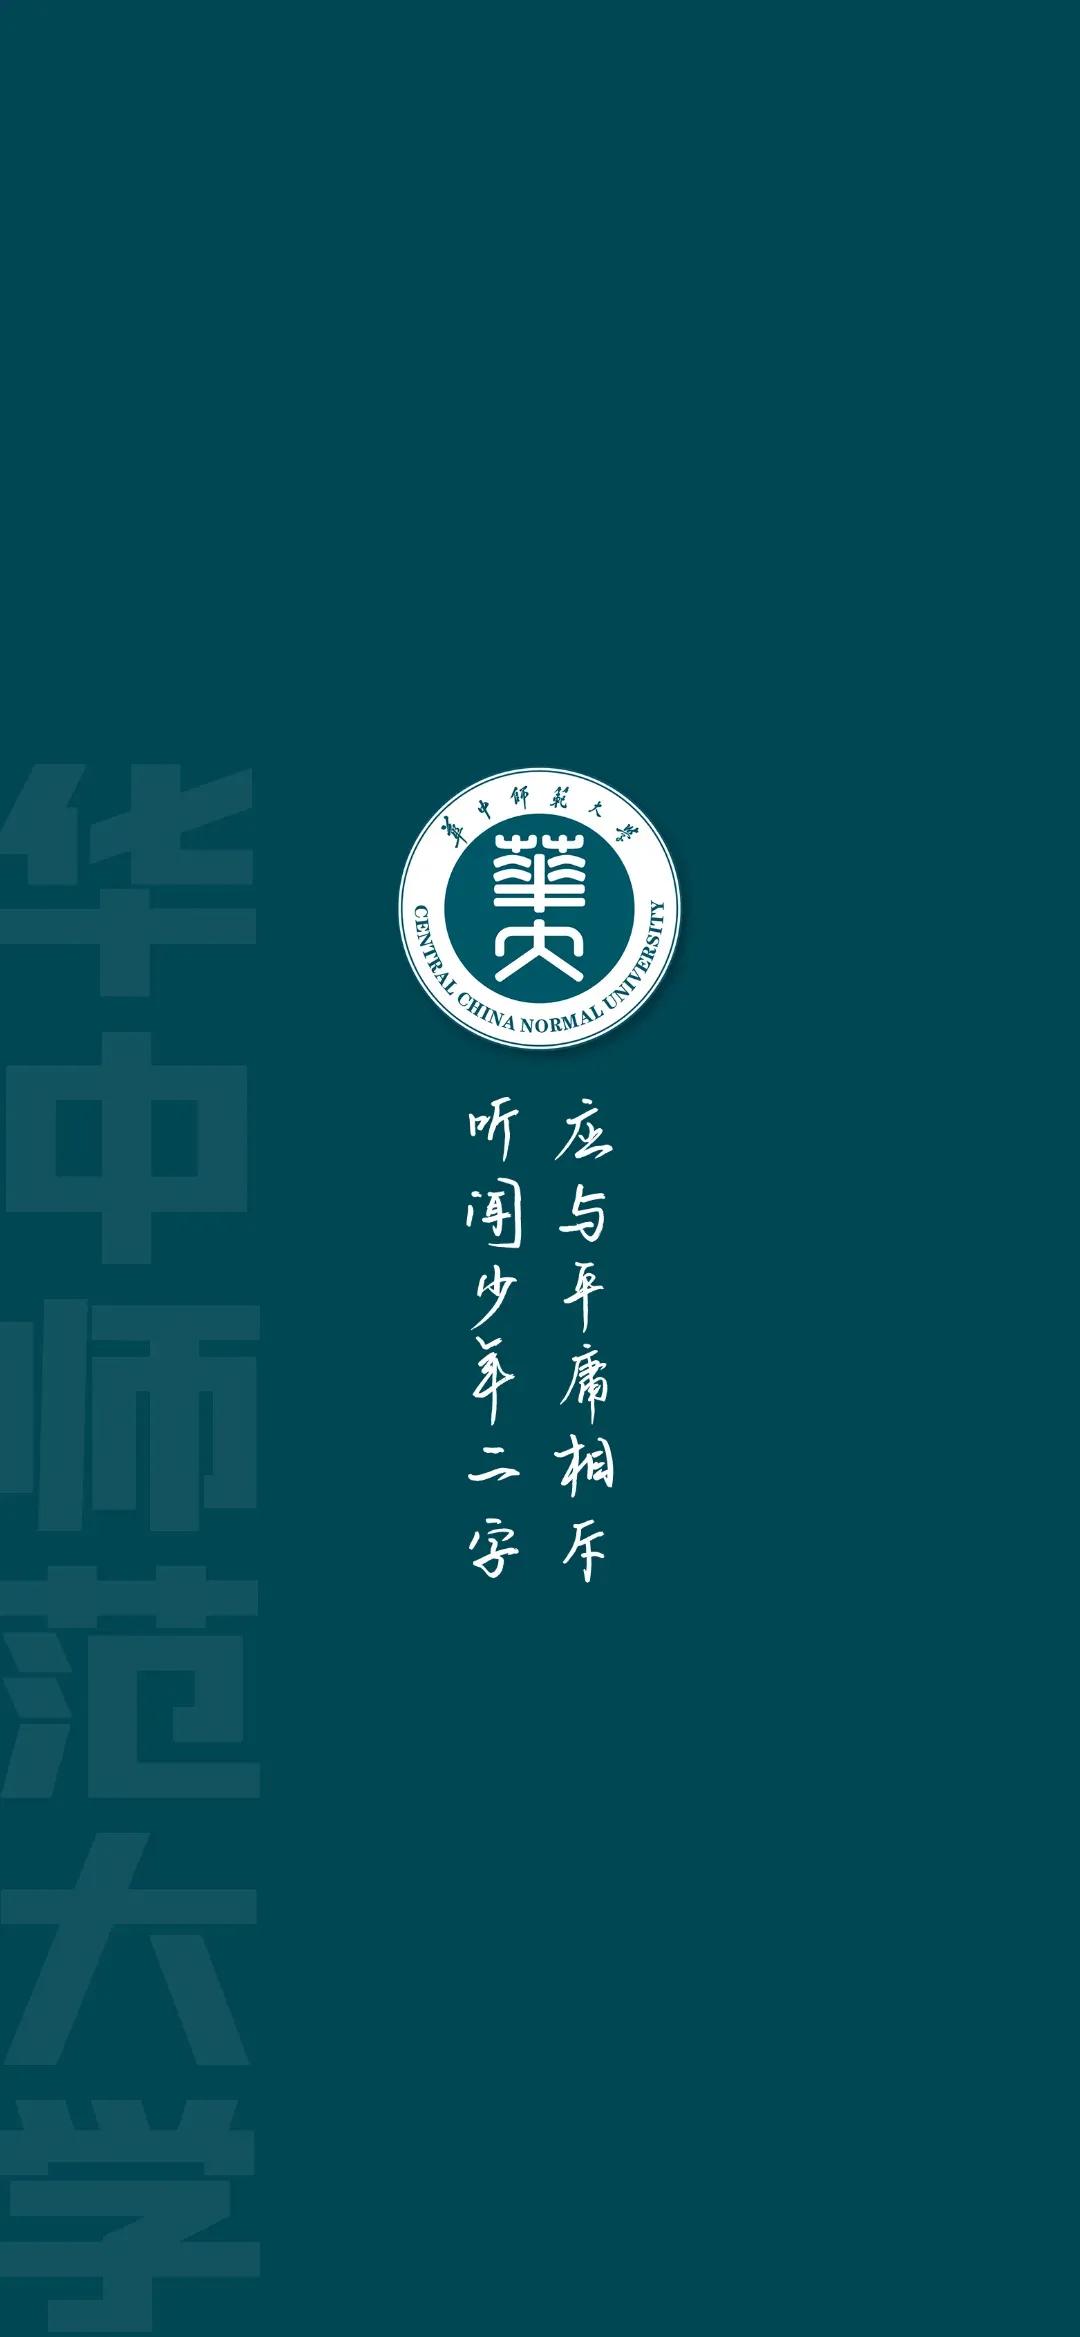 各大学校徽「广州各大学校徽」